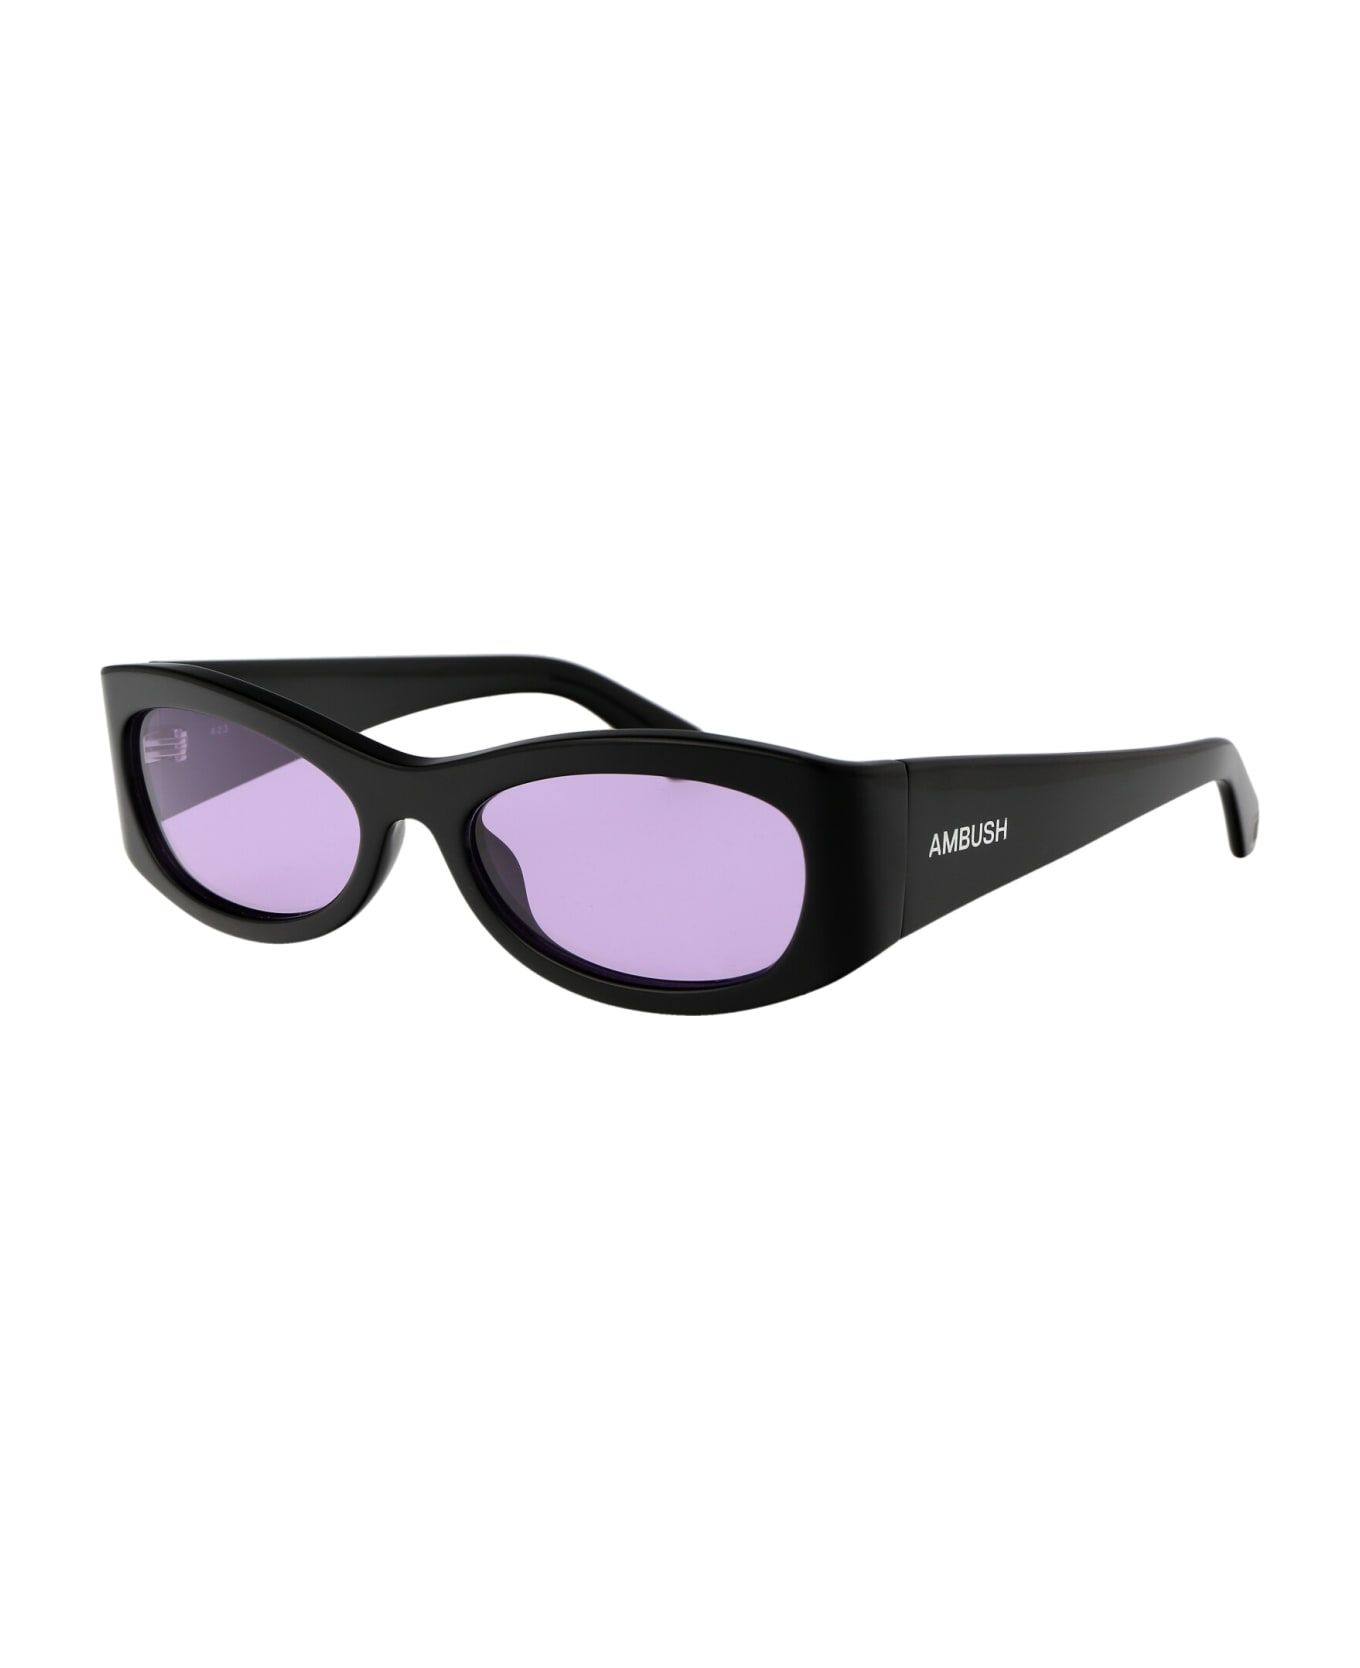 AMBUSH Bernie Sunglasses - 1037 BLACK